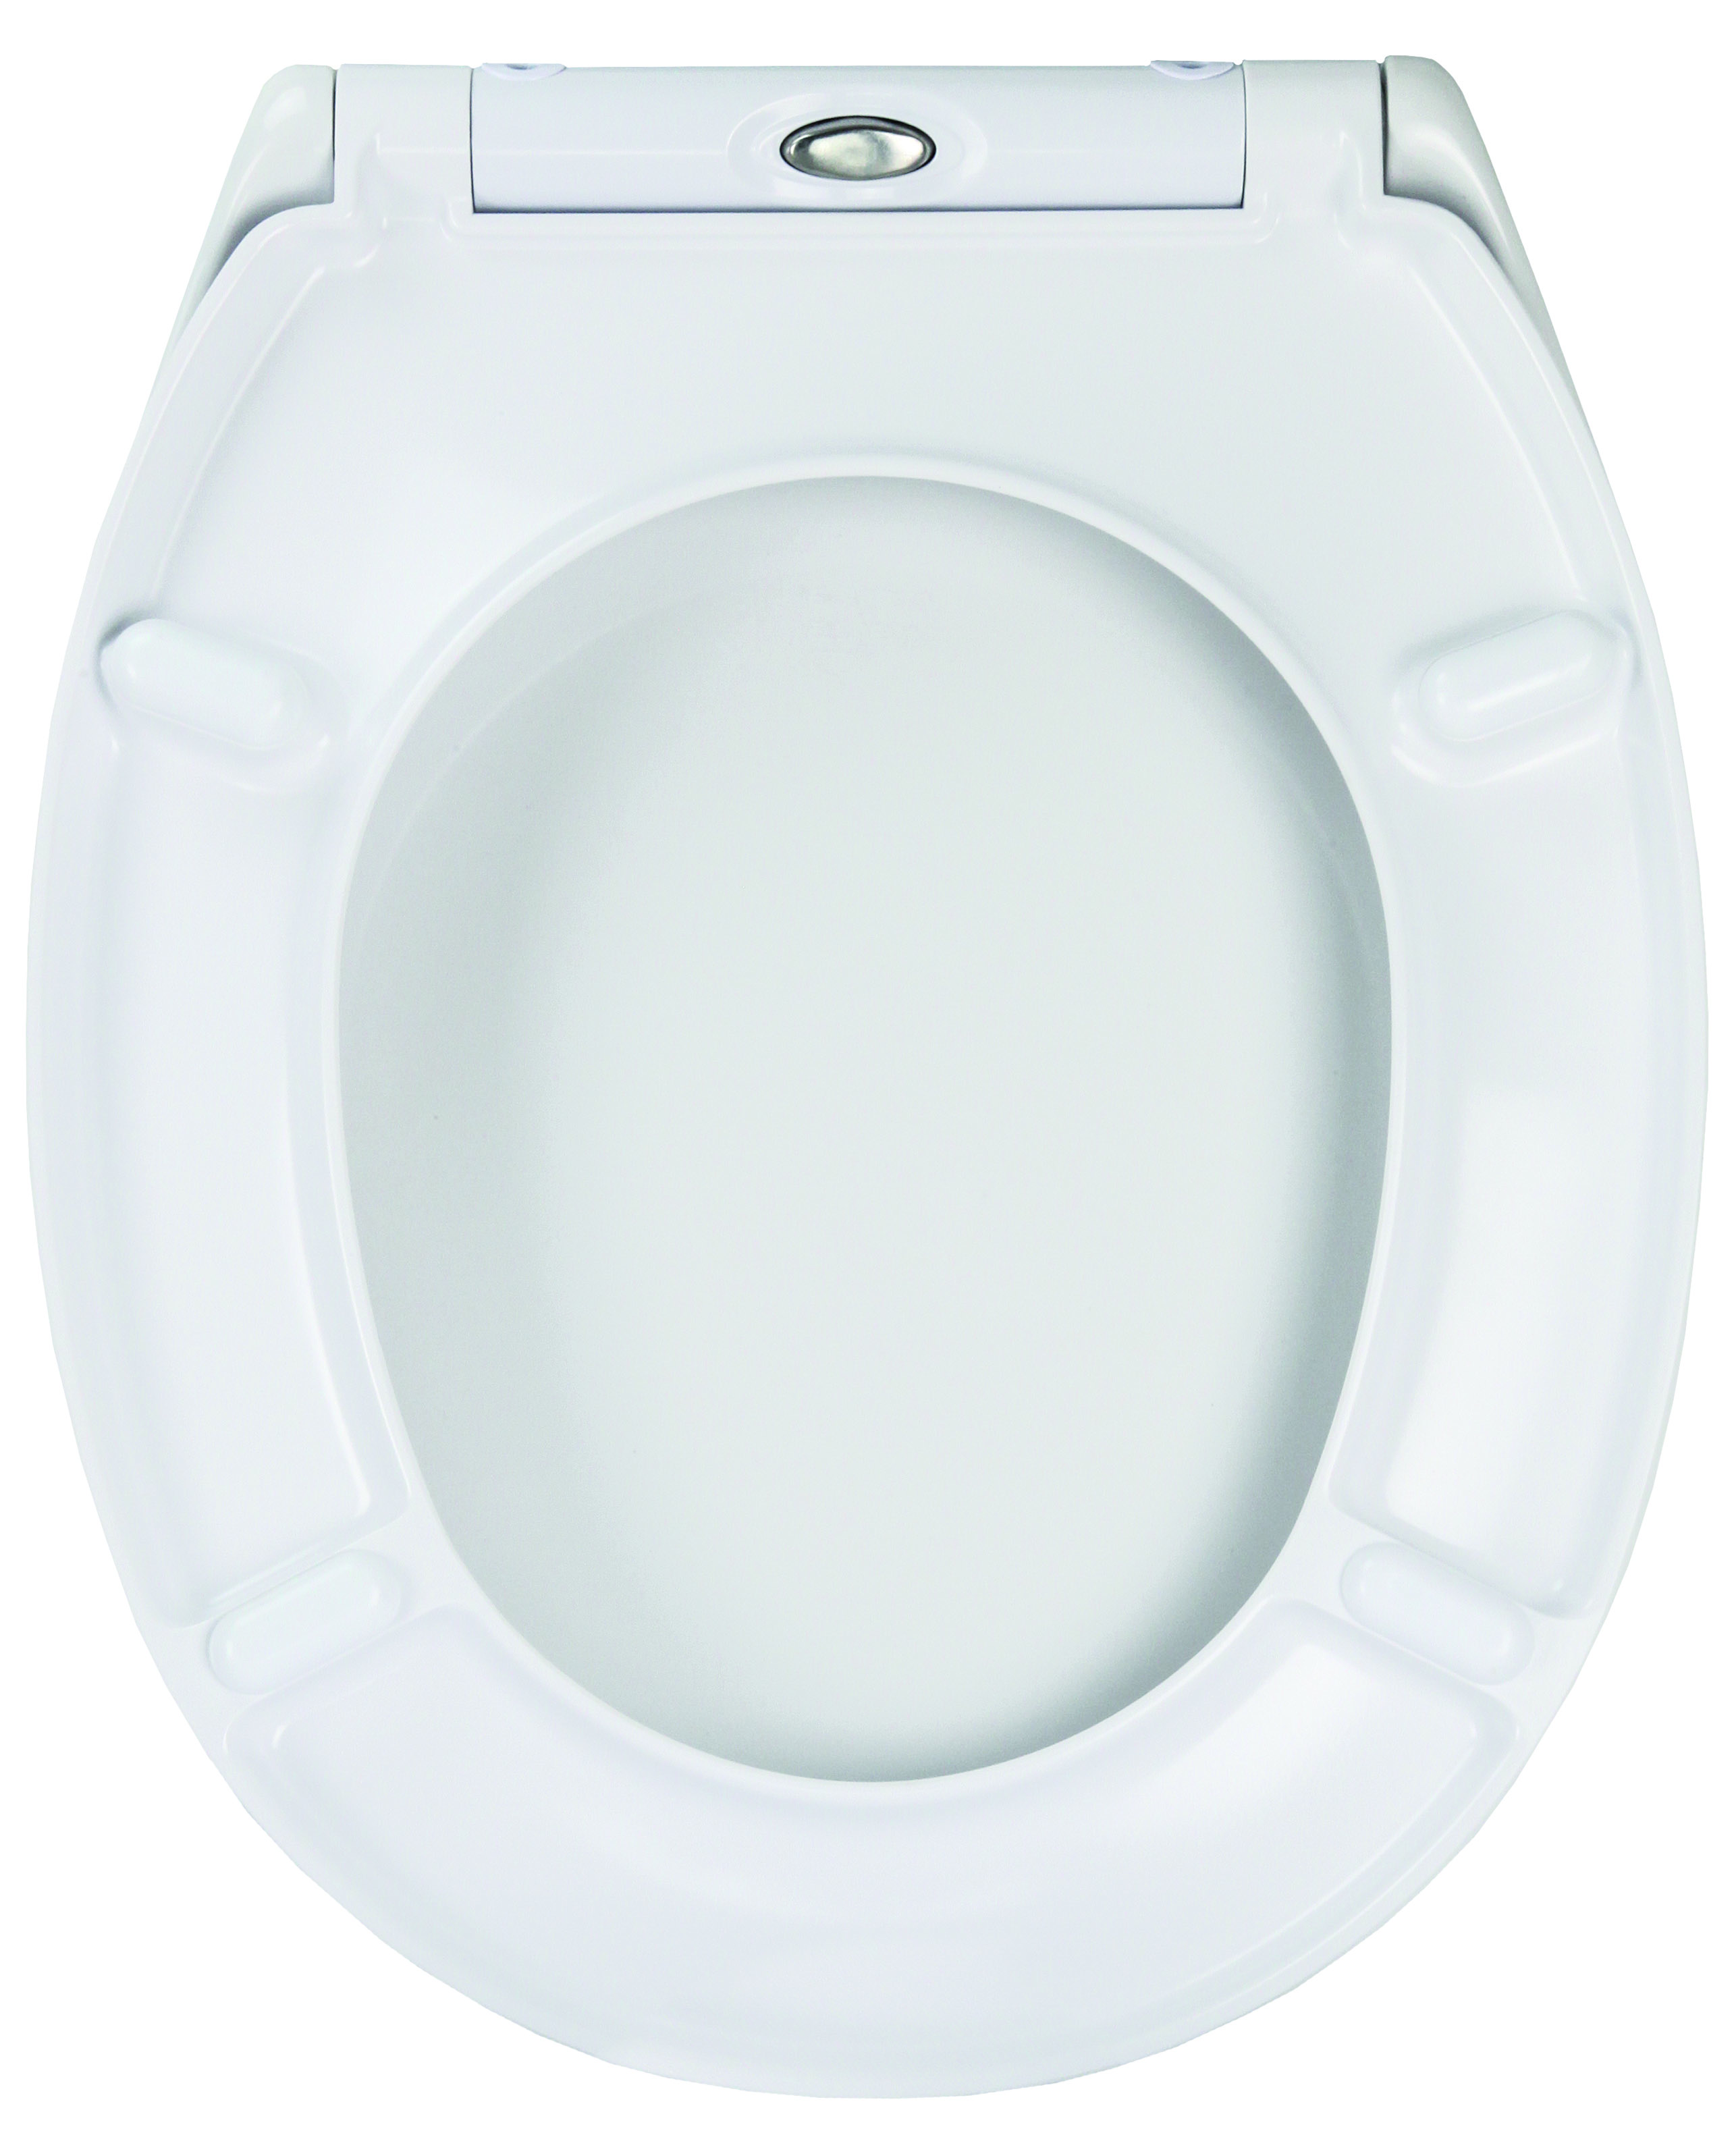 WC-Sitz BLAZE aus Duroplast mit Absenkautomatik und Easy Clean